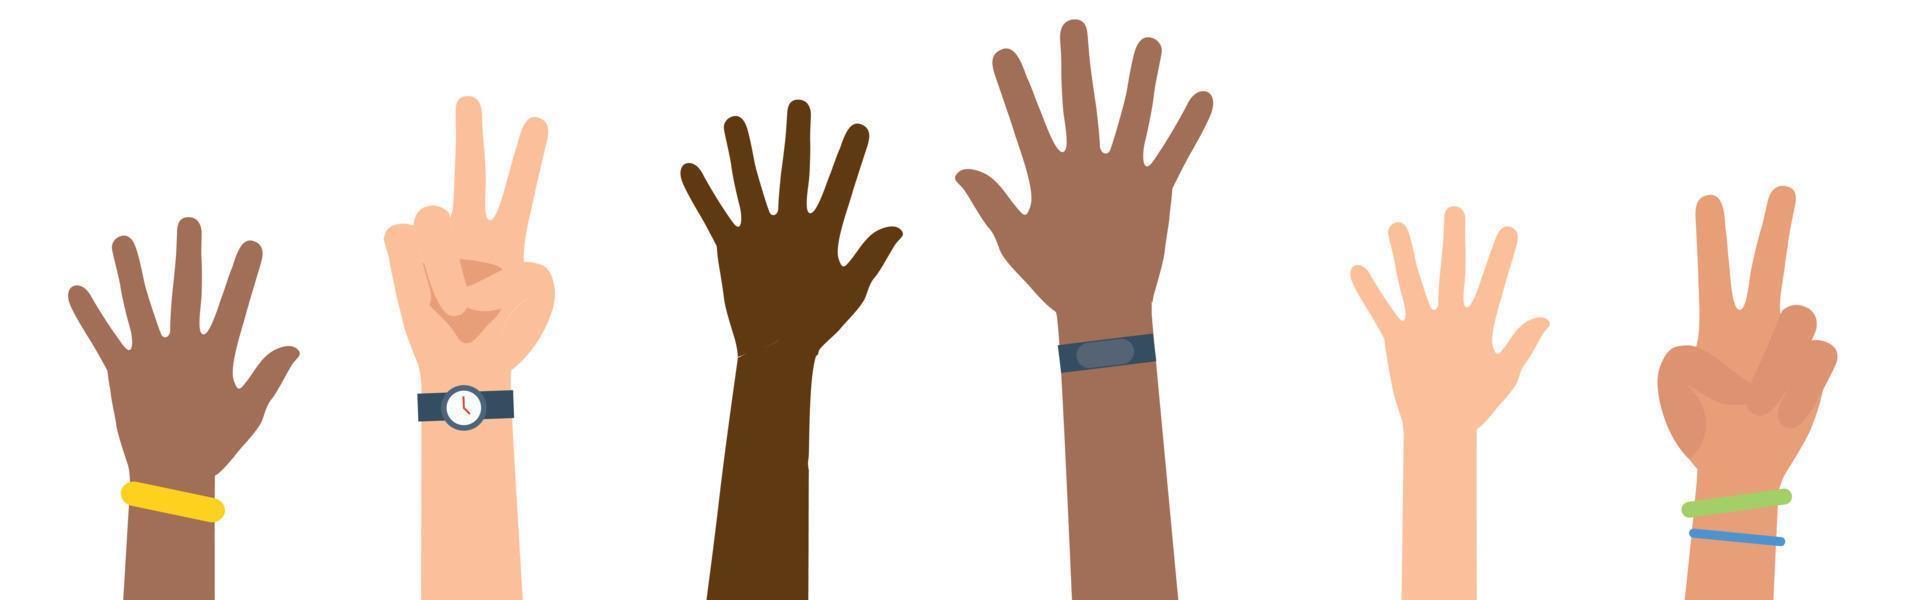 mãos multiétnicas e diversas levantadas isoladas no fundo branco. ilustração vetorial vetor